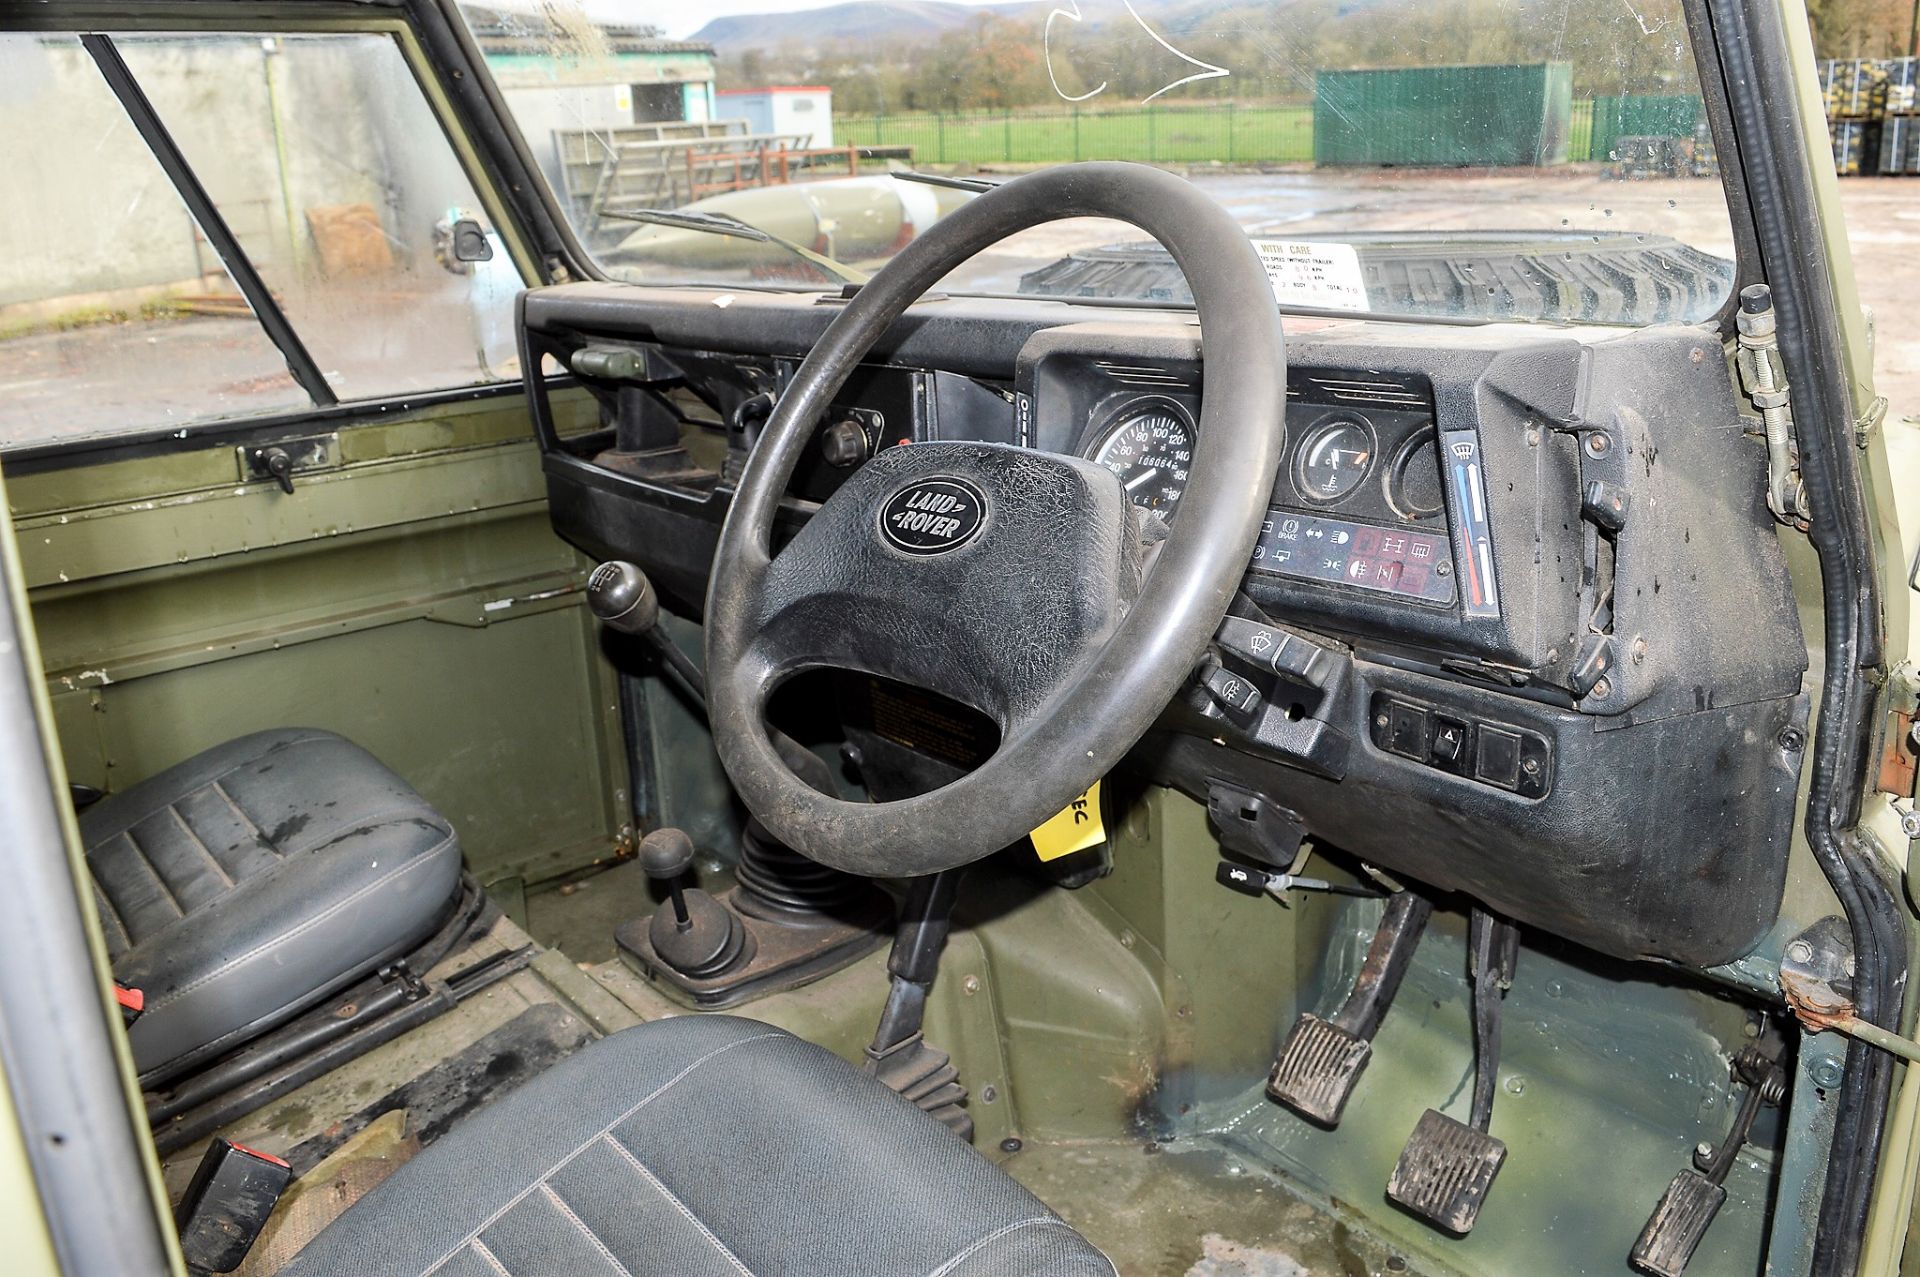 Land Rover Defender 110 hard top (Ex MOD) Registration Number: L896 SEC Year: 1993 MOT Expires: 01/ - Image 7 of 11